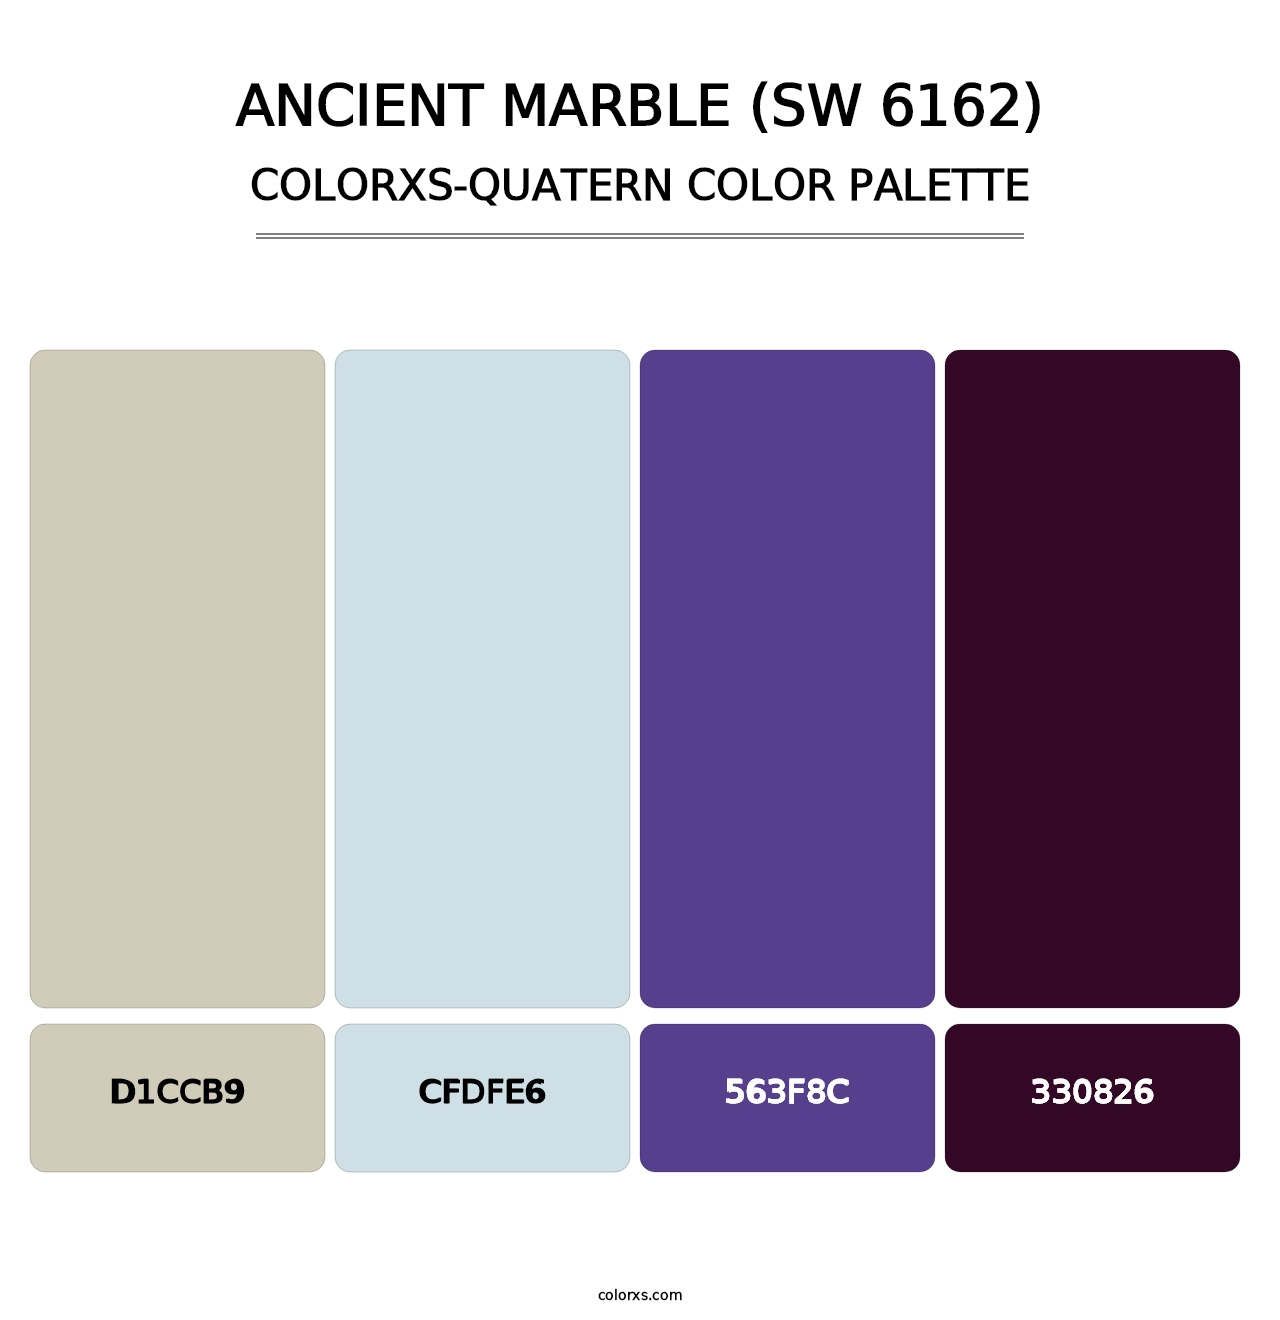 Ancient Marble (SW 6162) - Colorxs Quatern Palette